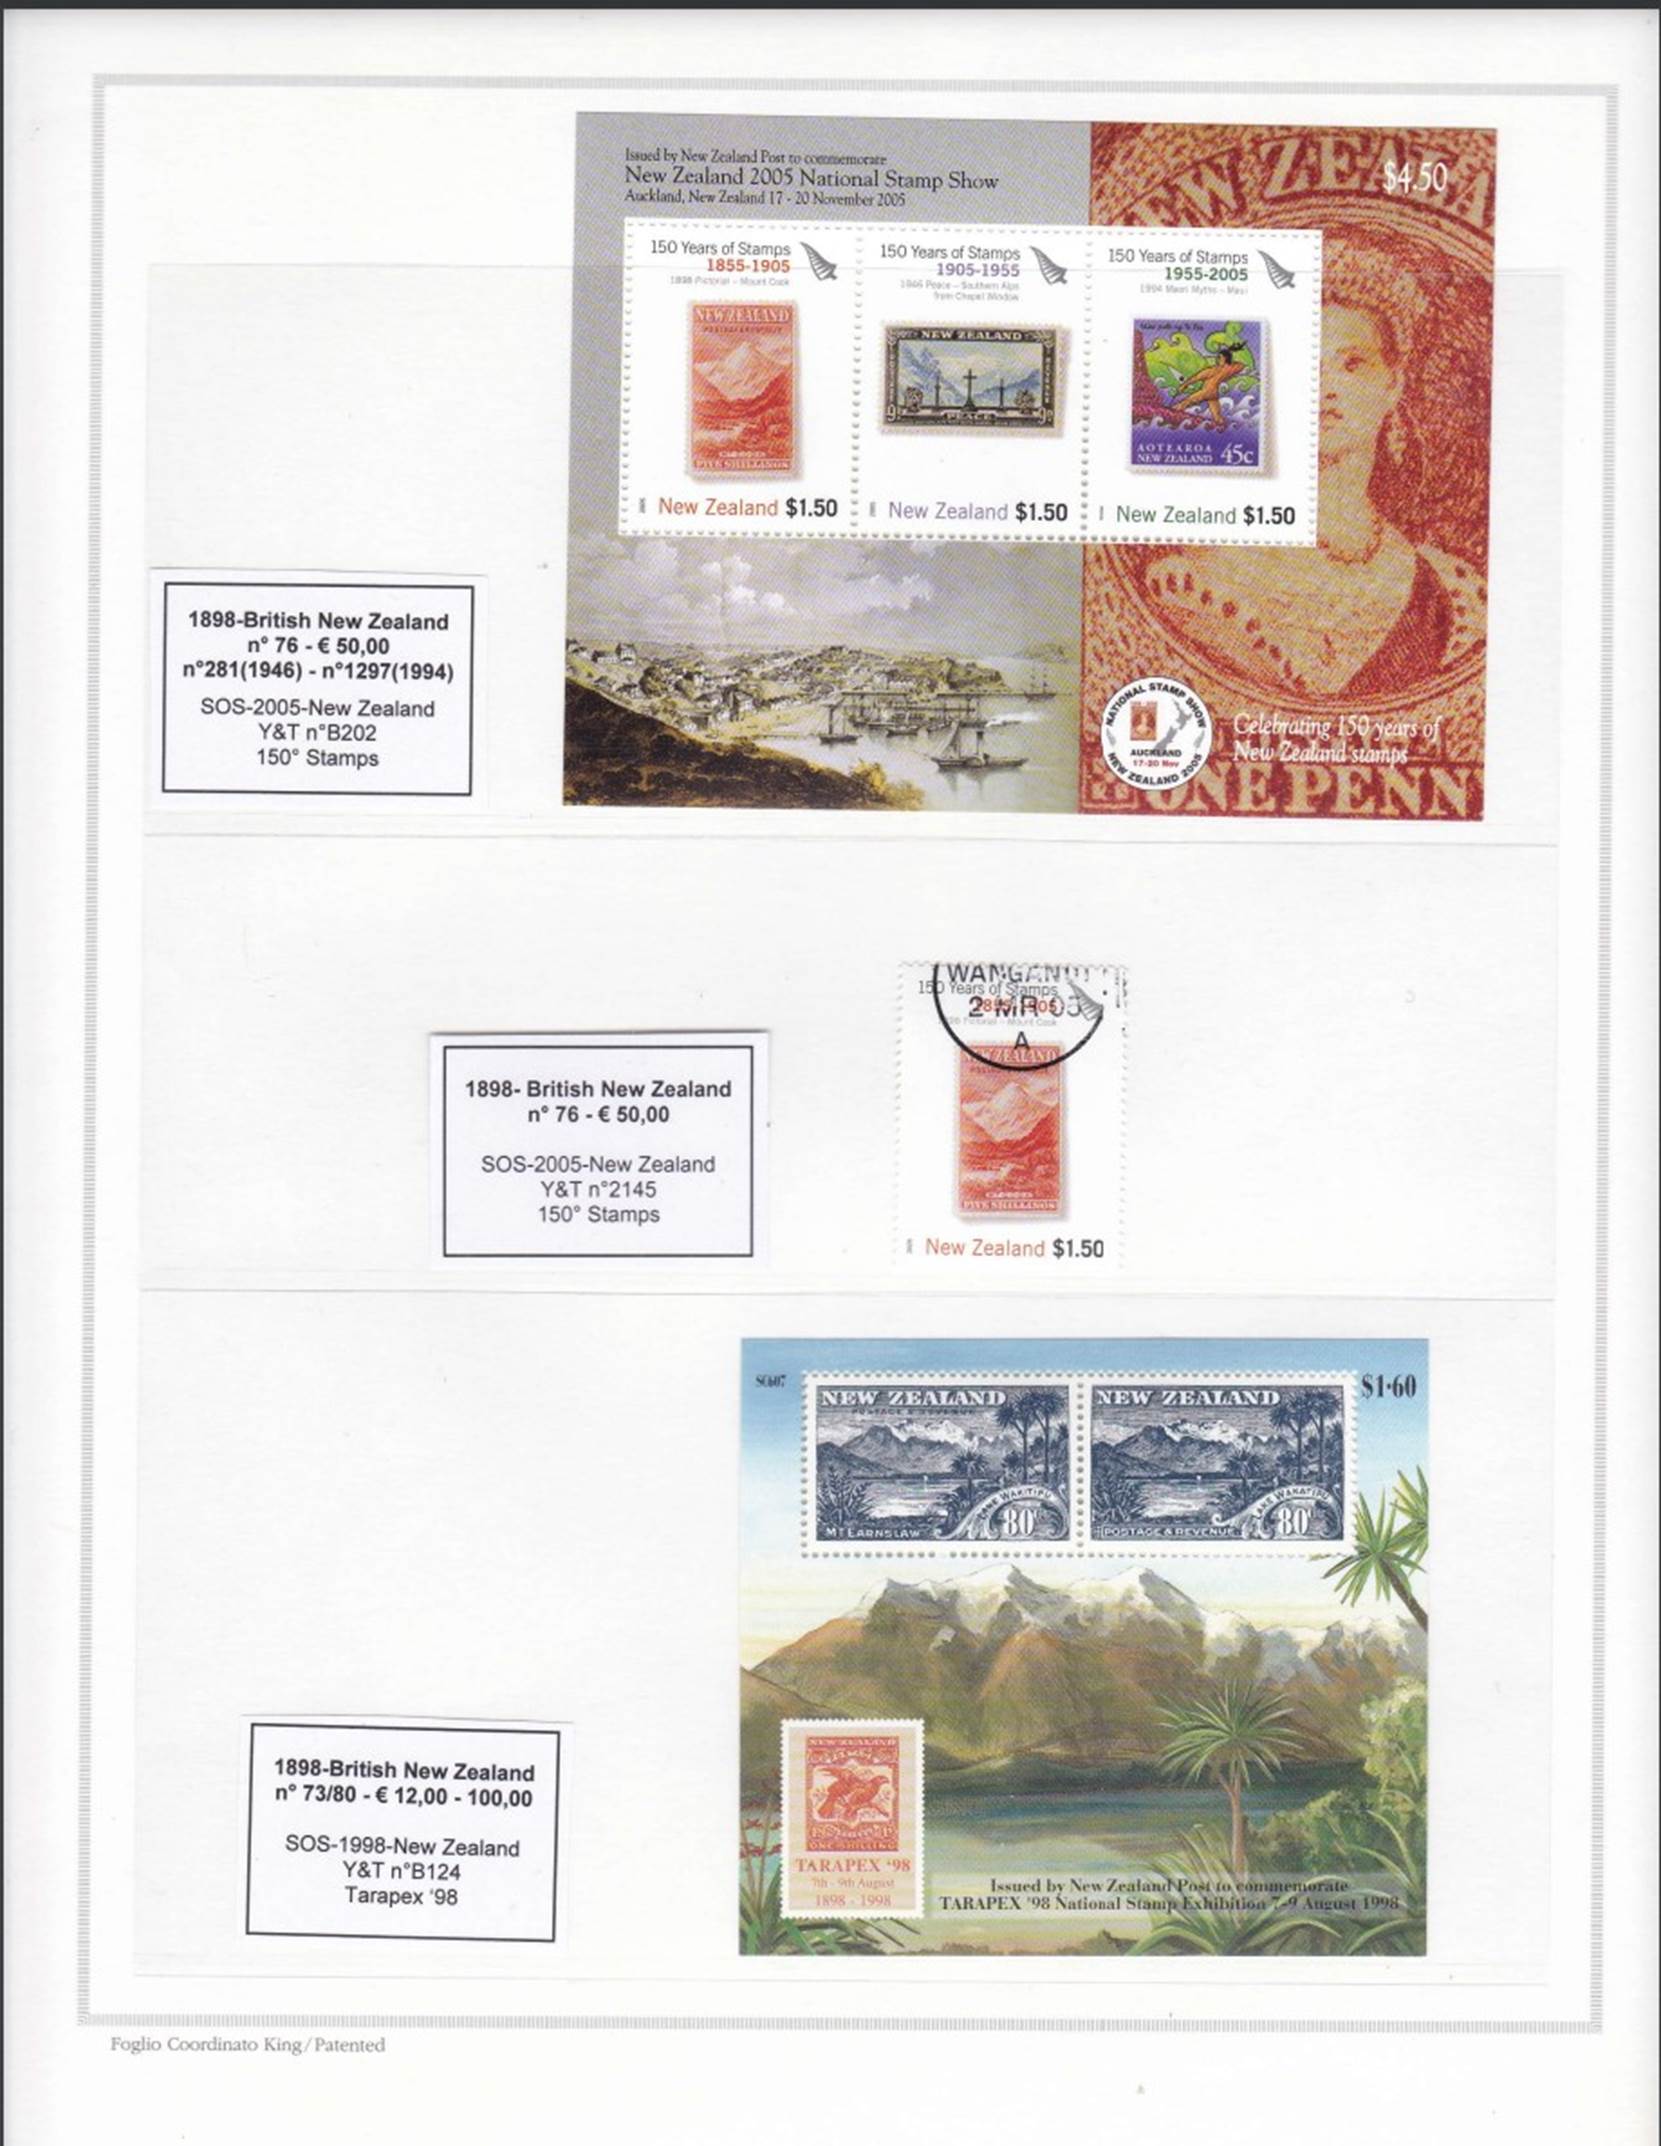 Immagine che contiene testo, francobollo, Prodotto di carta, Rettangolo

Descrizione generata automaticamente